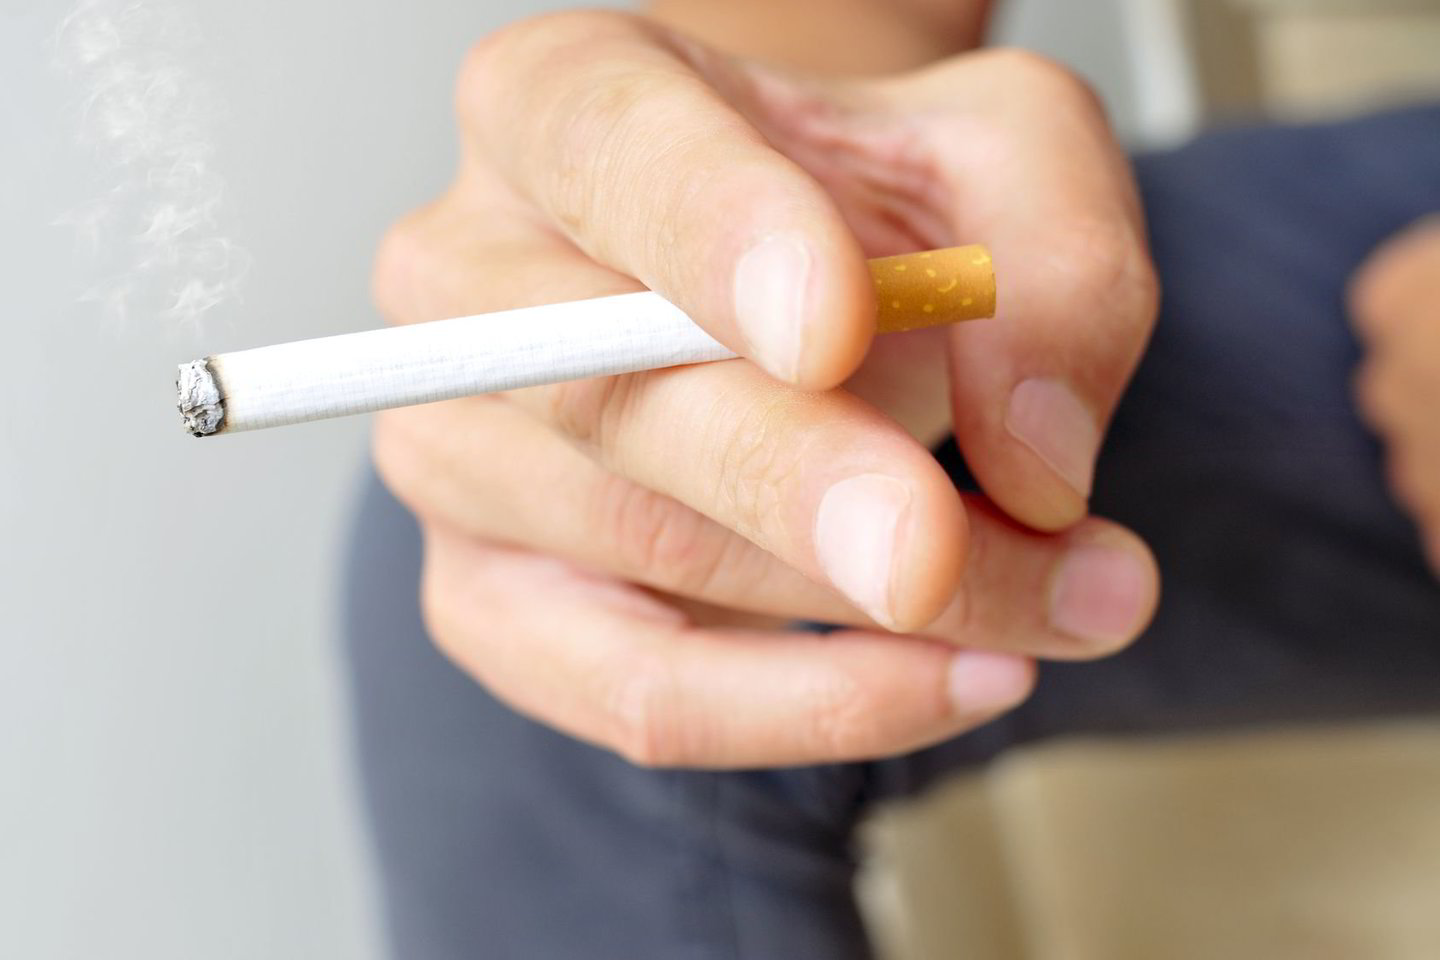  Cigarečių teršalai gali įsigerti į baldus ir taip pat kenkti sveikatai.<br> 123rf.com nuotr.